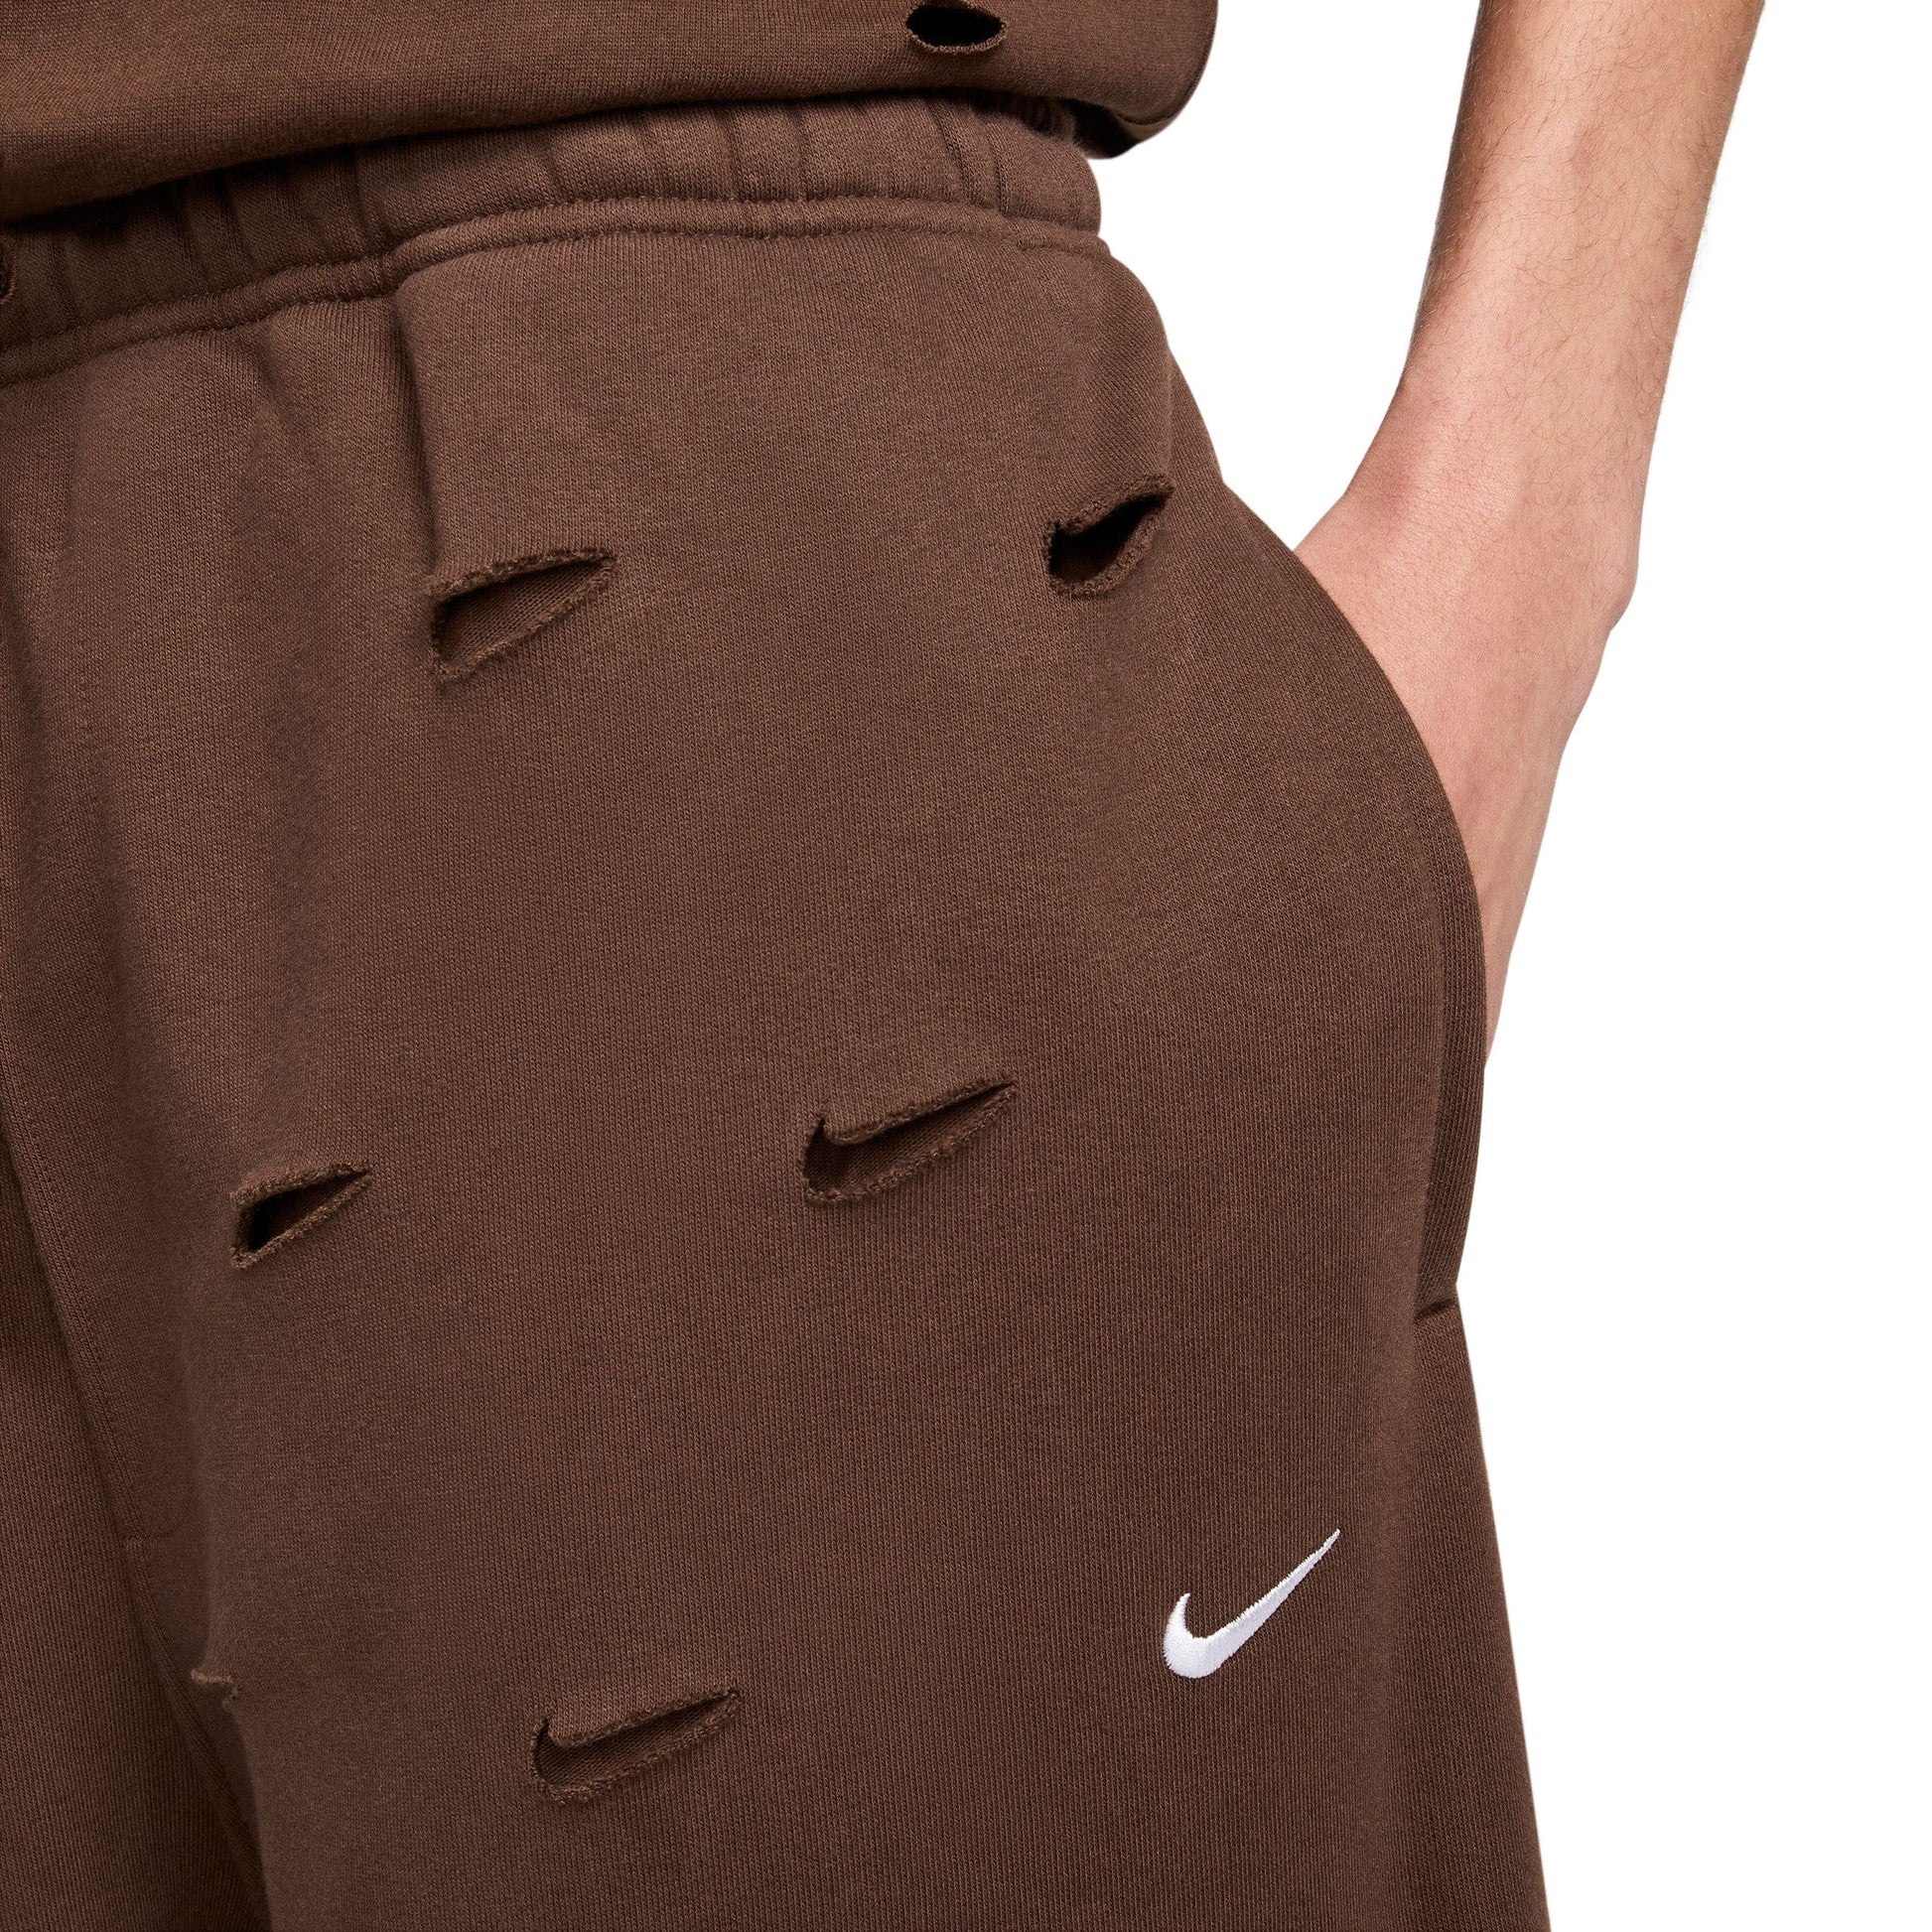 Buy Nike Women's Power Training Pants Brown in Kuwait -SSS